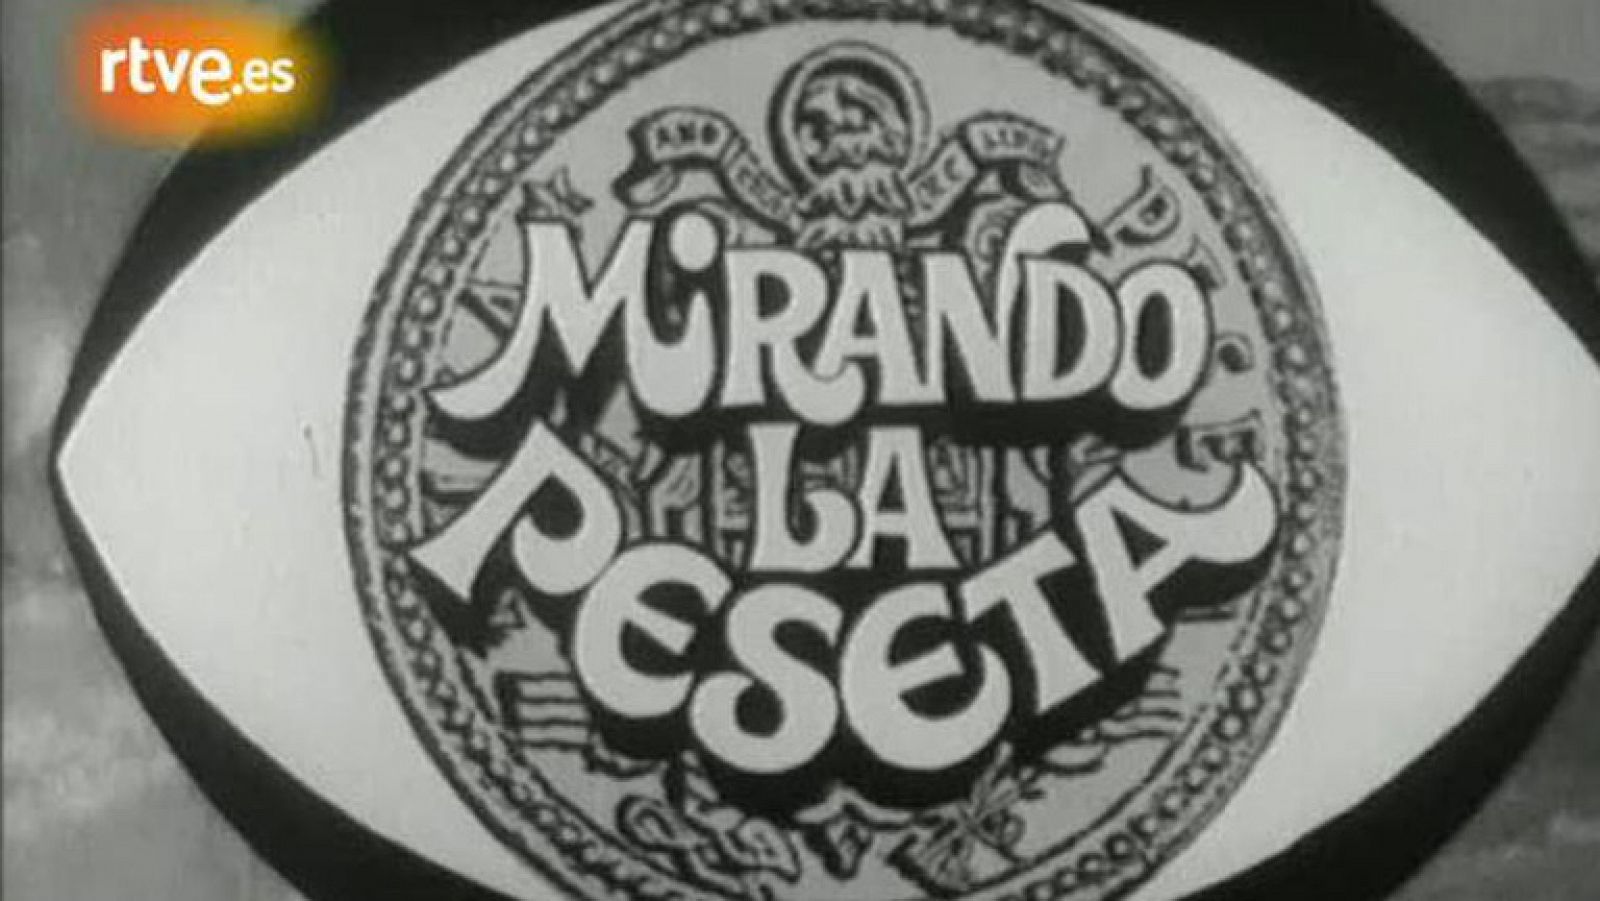 Un '35 millones mirando la peseta' (1975)